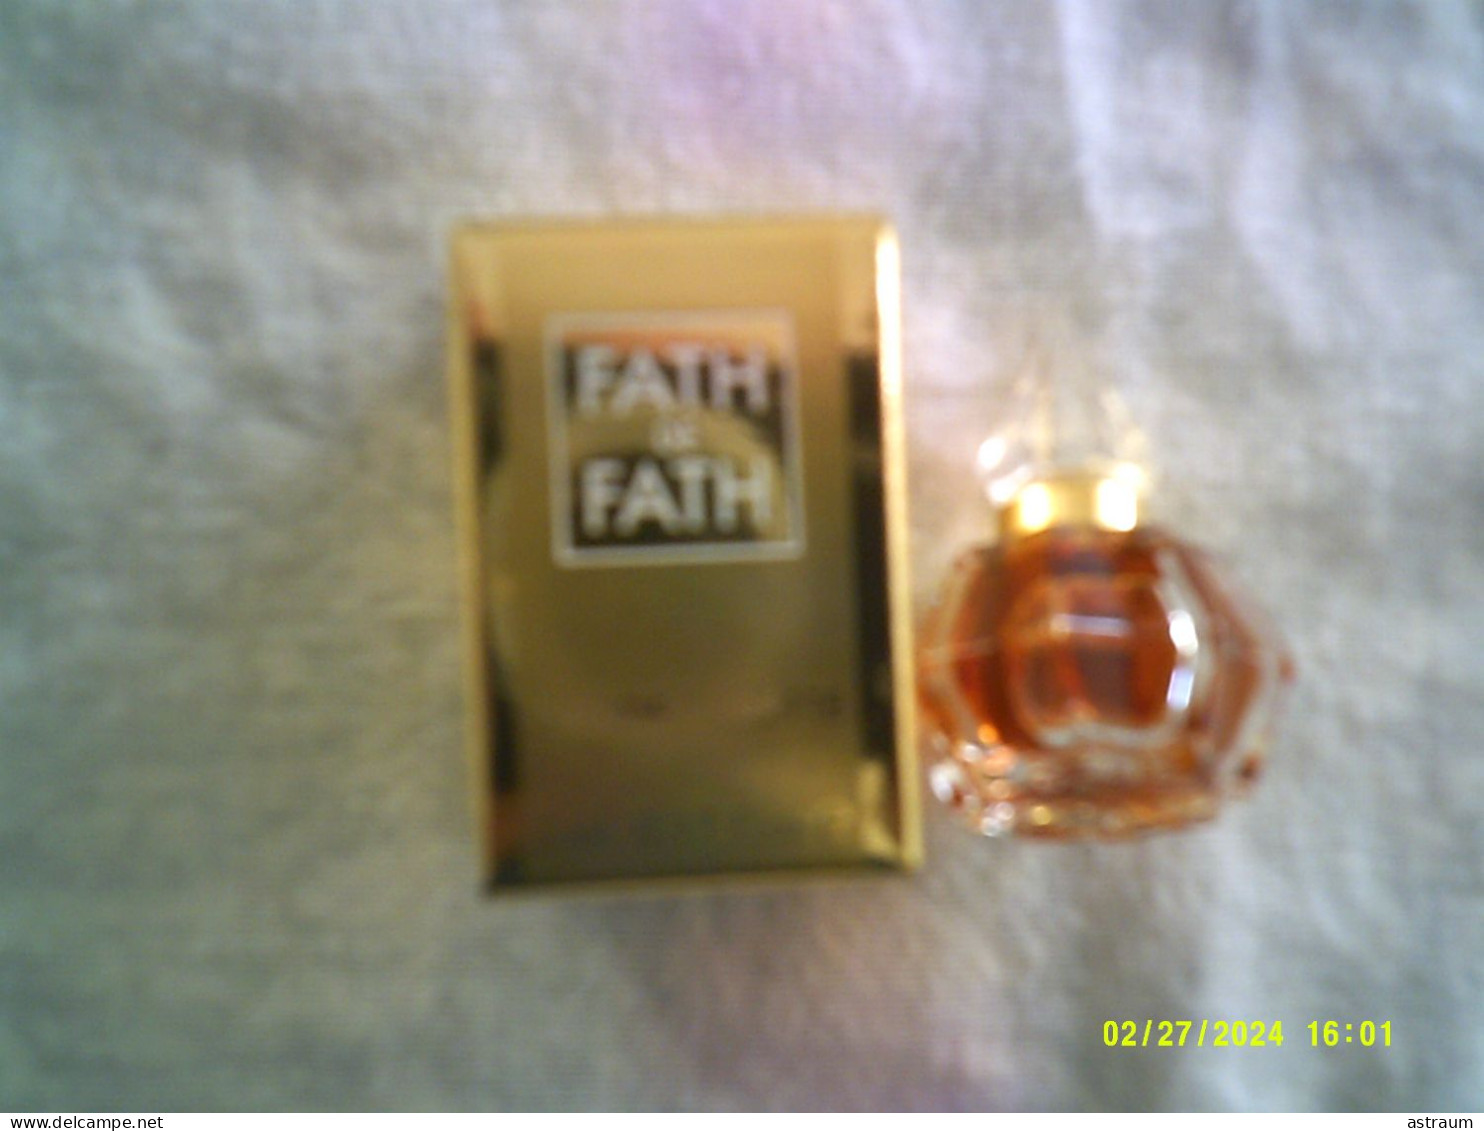 Miniature Ancienne Parfum - Fath De Fath - EDT - Pleine Avec Boite 5ml - Miniatures Femmes (avec Boite)